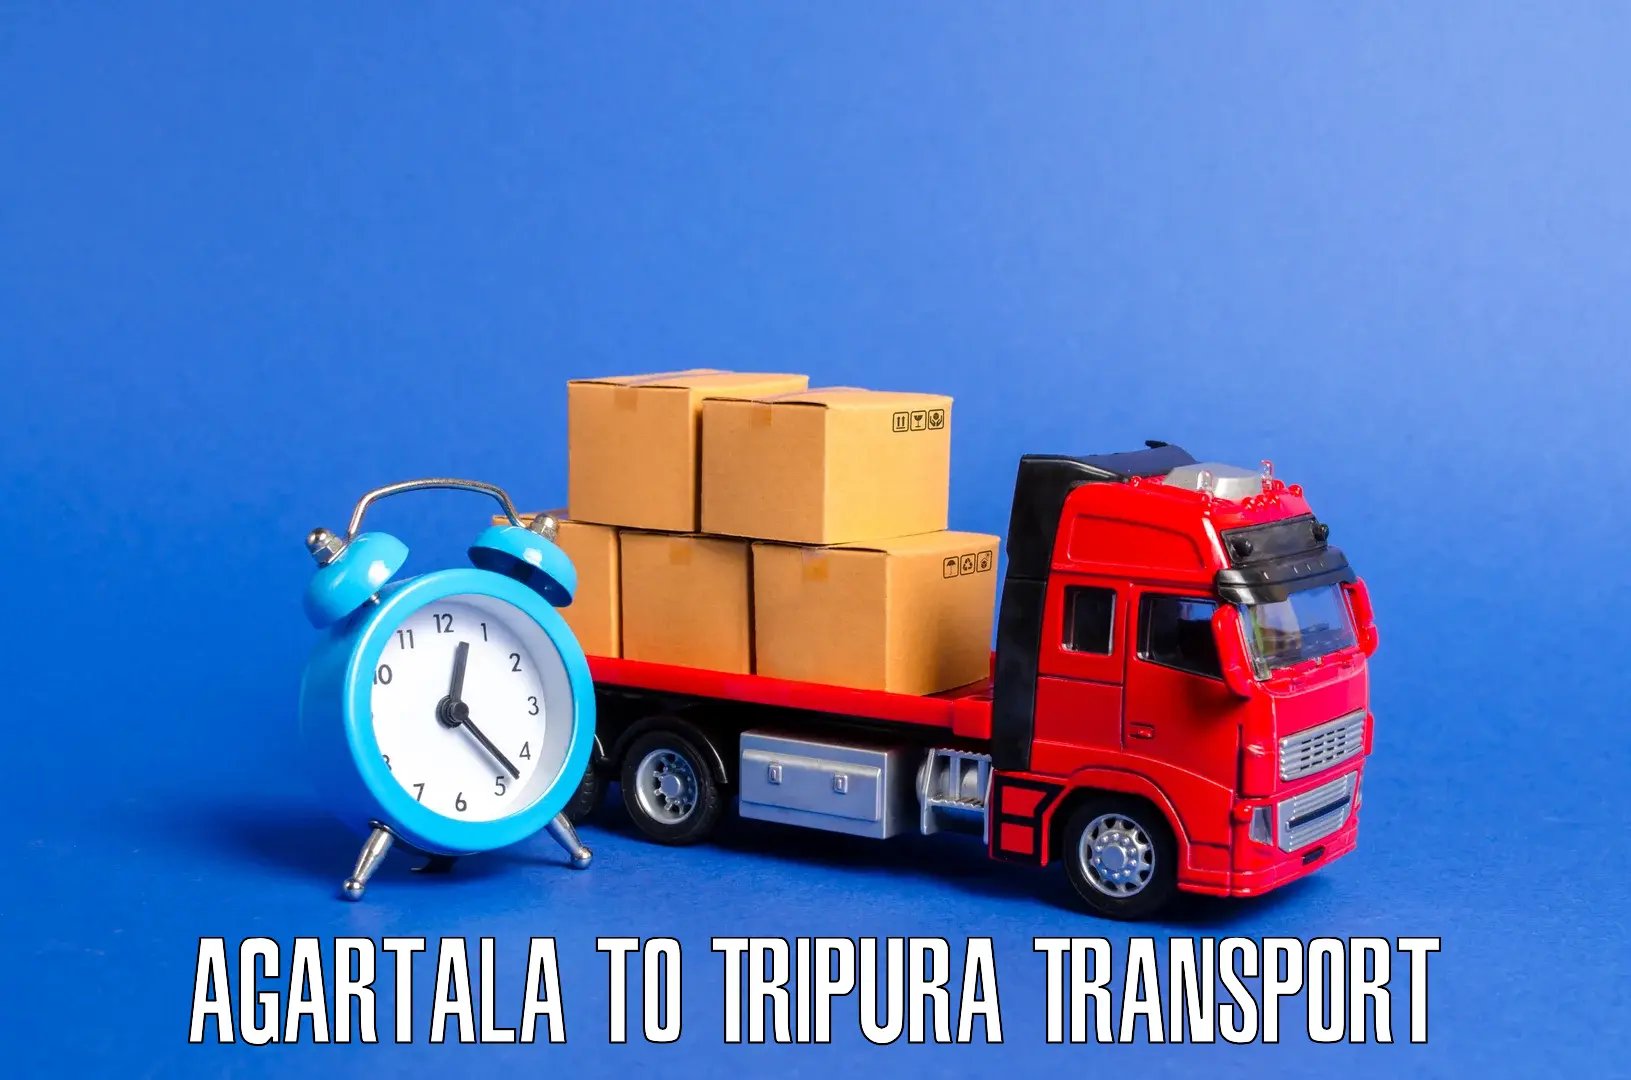 Online transport service Agartala to Bishalgarh